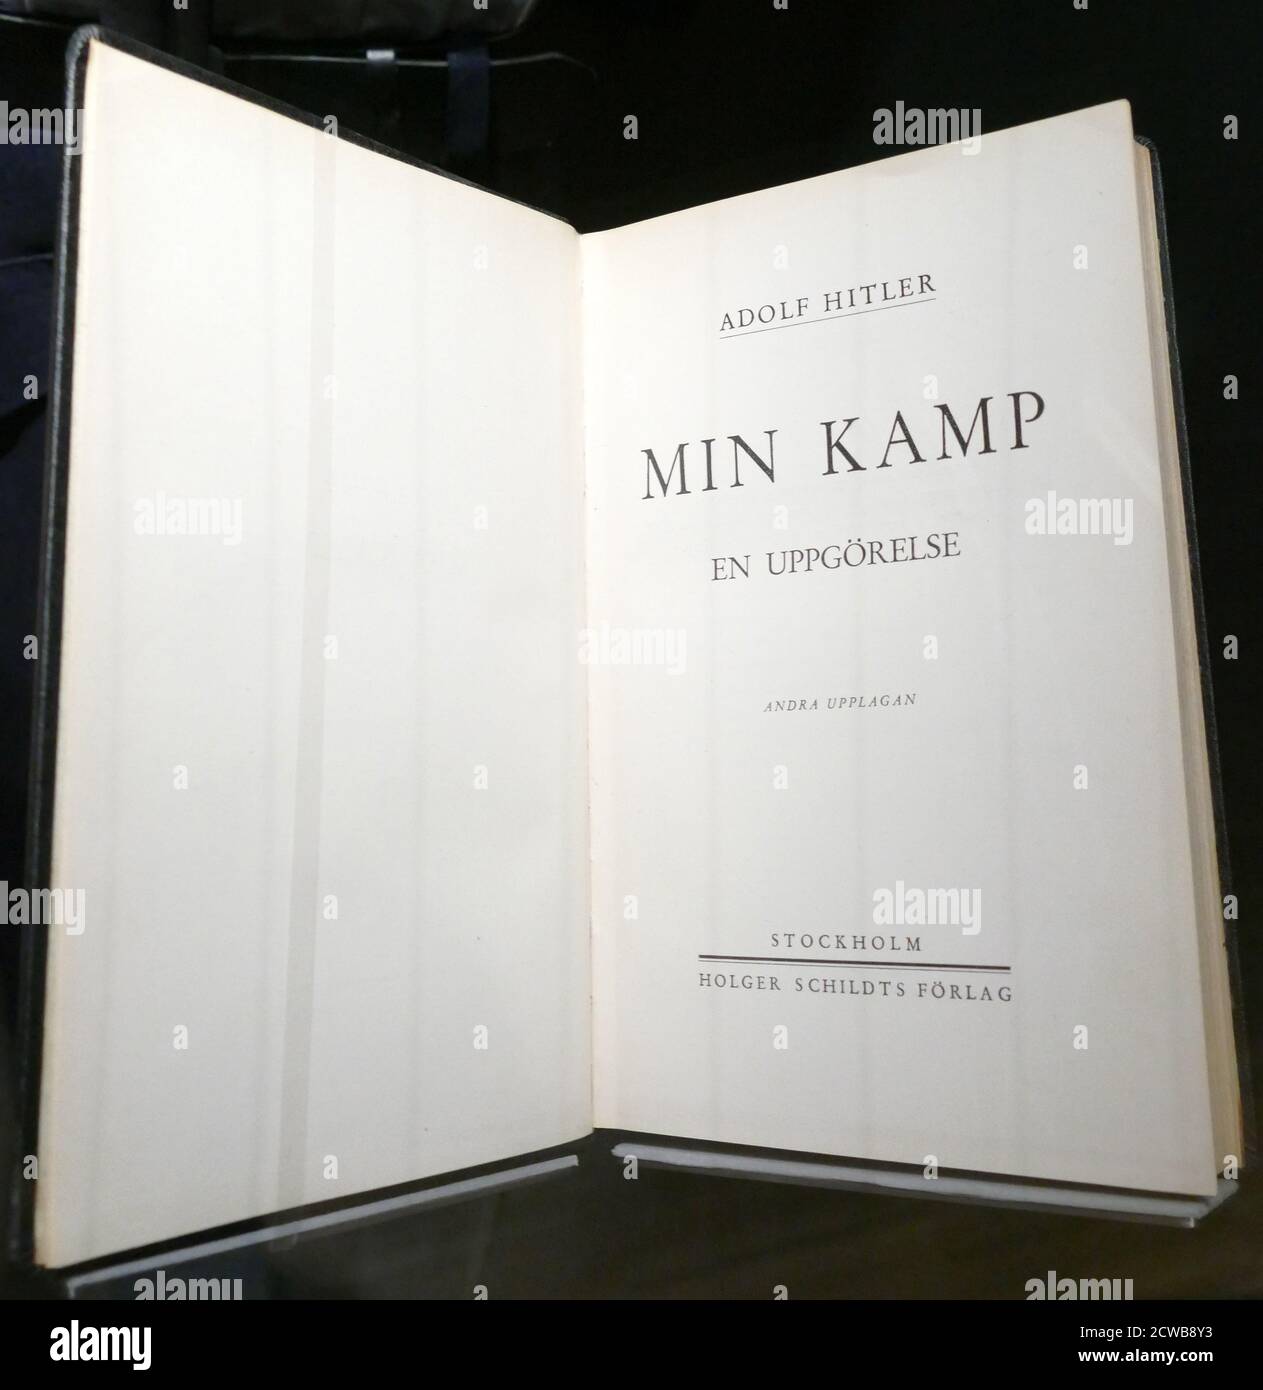 Edizione svedese di Mein Kampf (la mia lotta o la mia lotta), manifesto autobiografico del leader del Partito nazista Adolf Hitler. Il lavoro descrive il processo con cui Hitler divenne antisemita e delinea la sua ideologia politica e i piani futuri per la Germania. Il volume 1 di Mein Kampf è stato pubblicato nel 1925 e il volume 2 nel 1926 Foto Stock